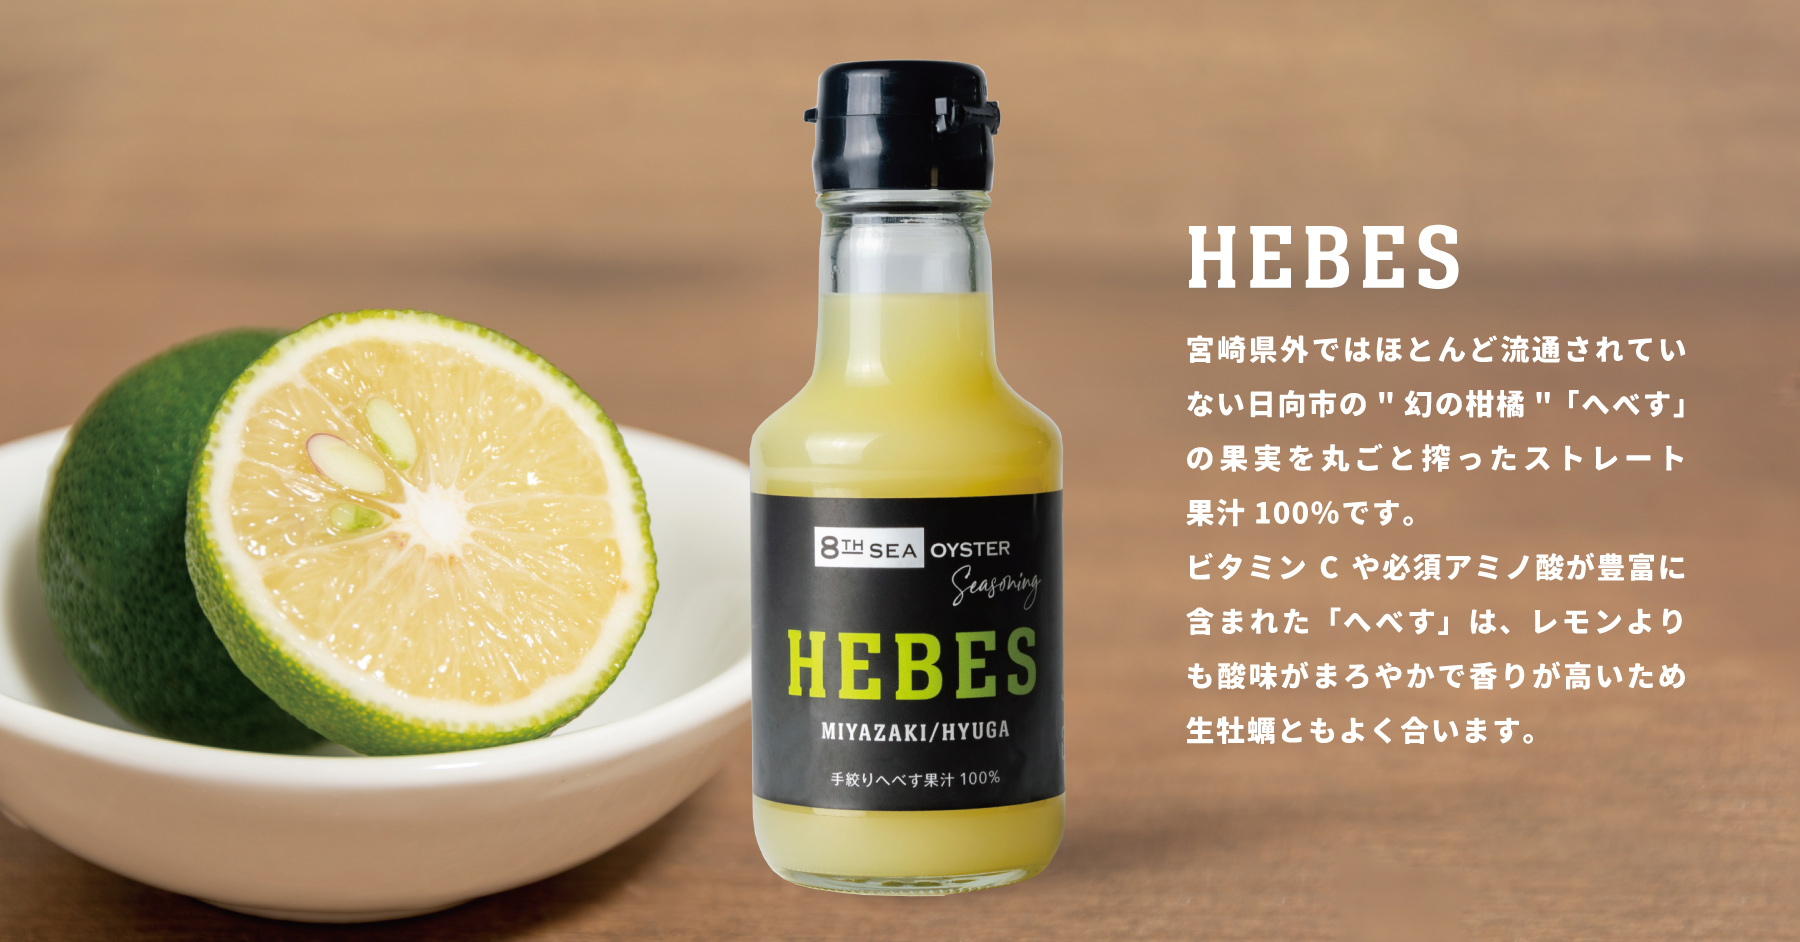 新商品HEBES（手絞りへべす果汁100%）